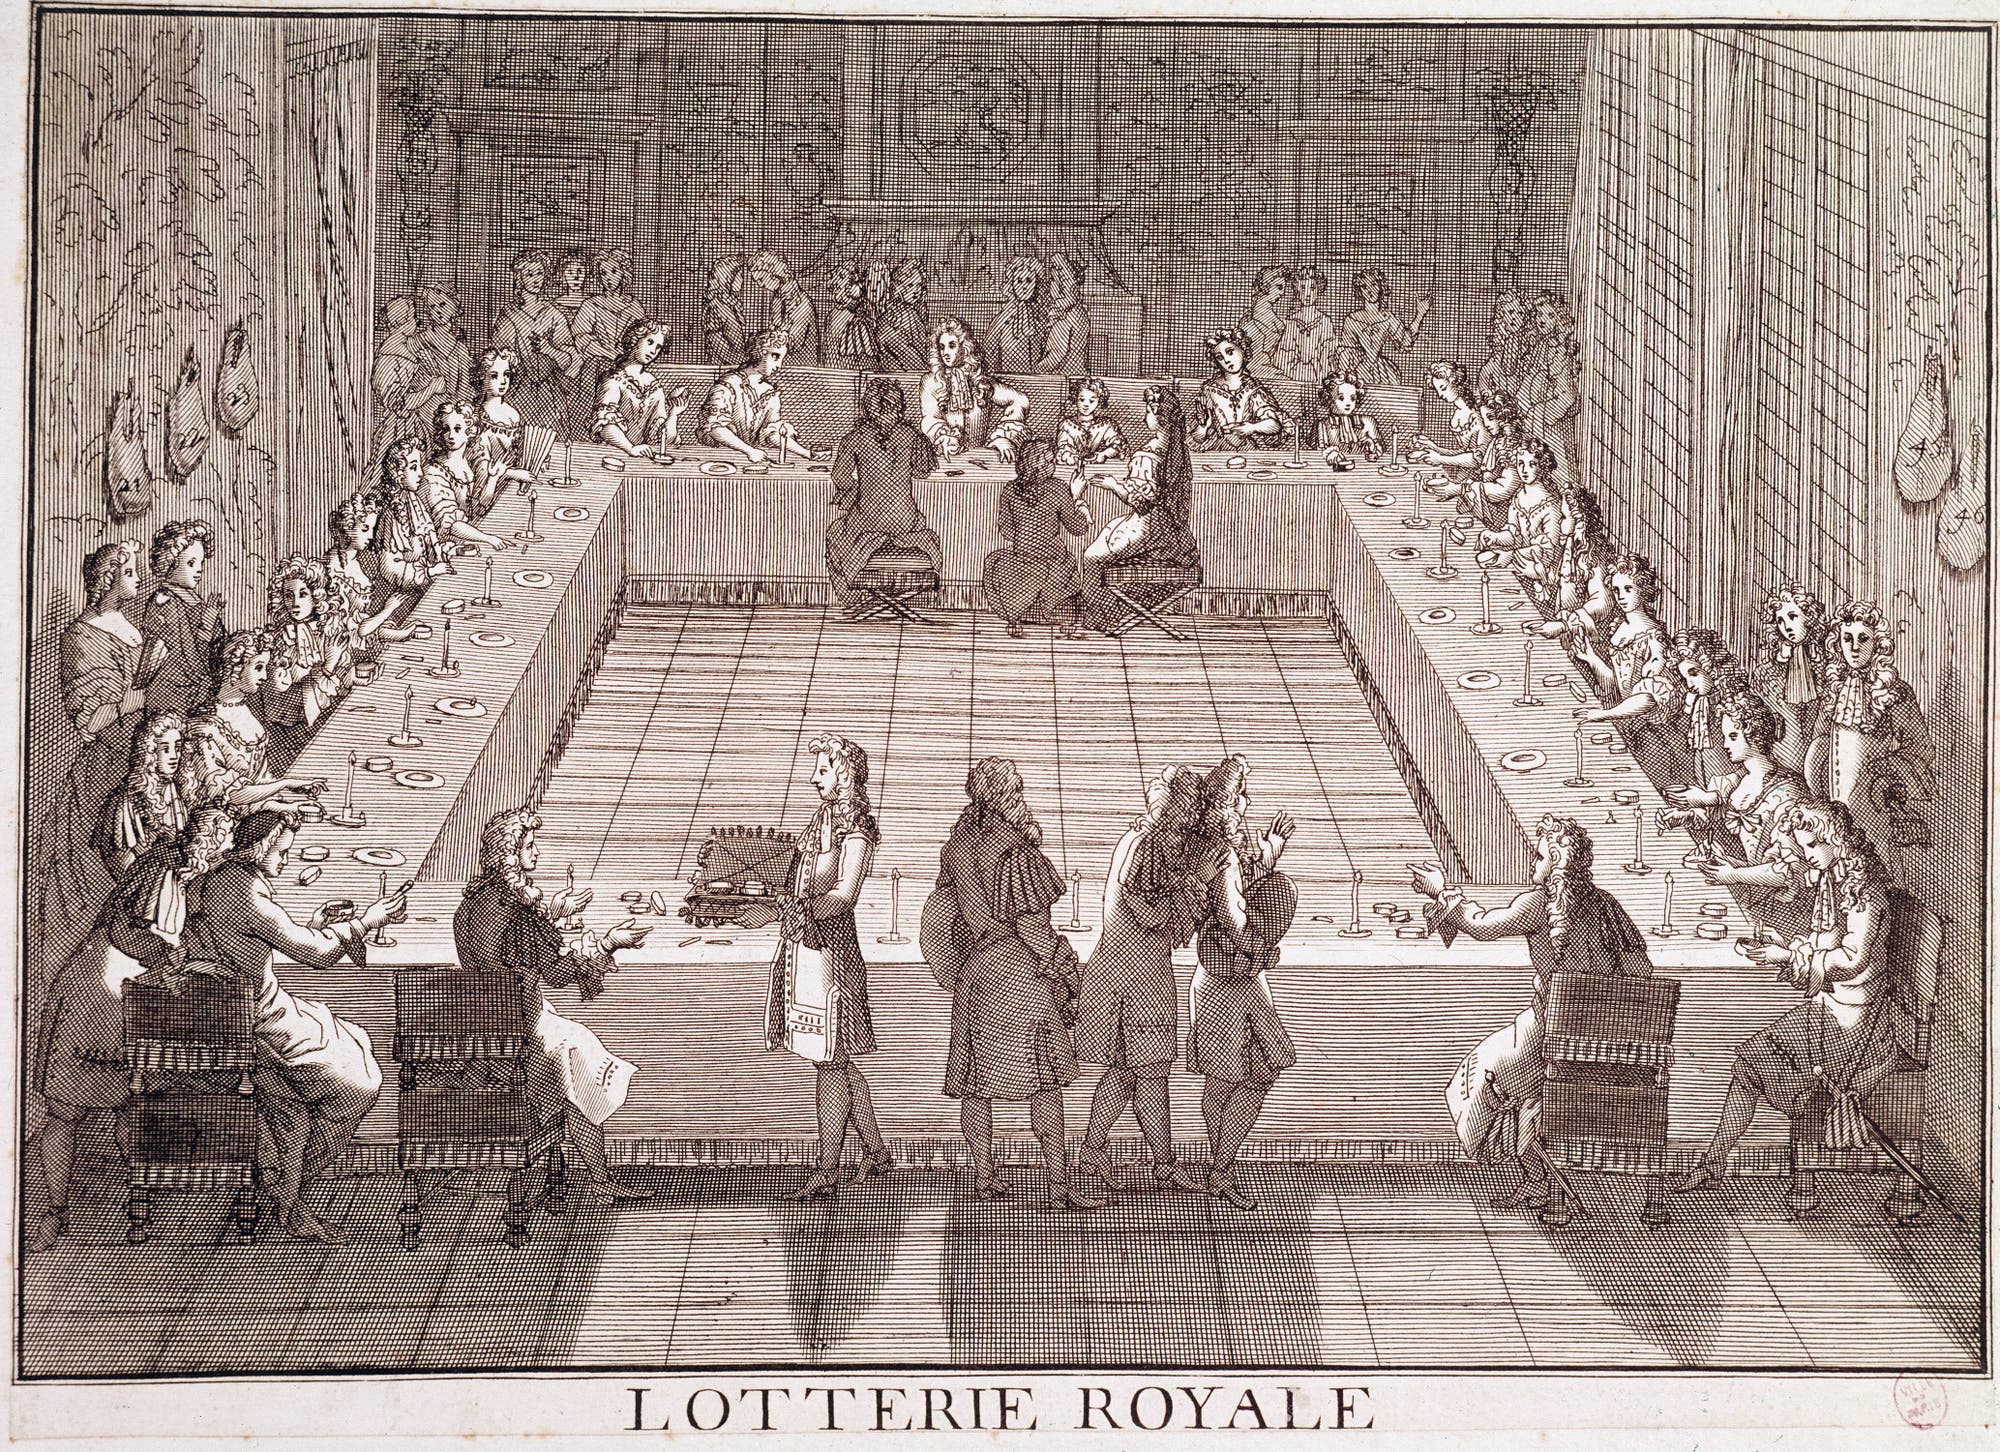 Königliche Lotterie im 17. Jahrhundert